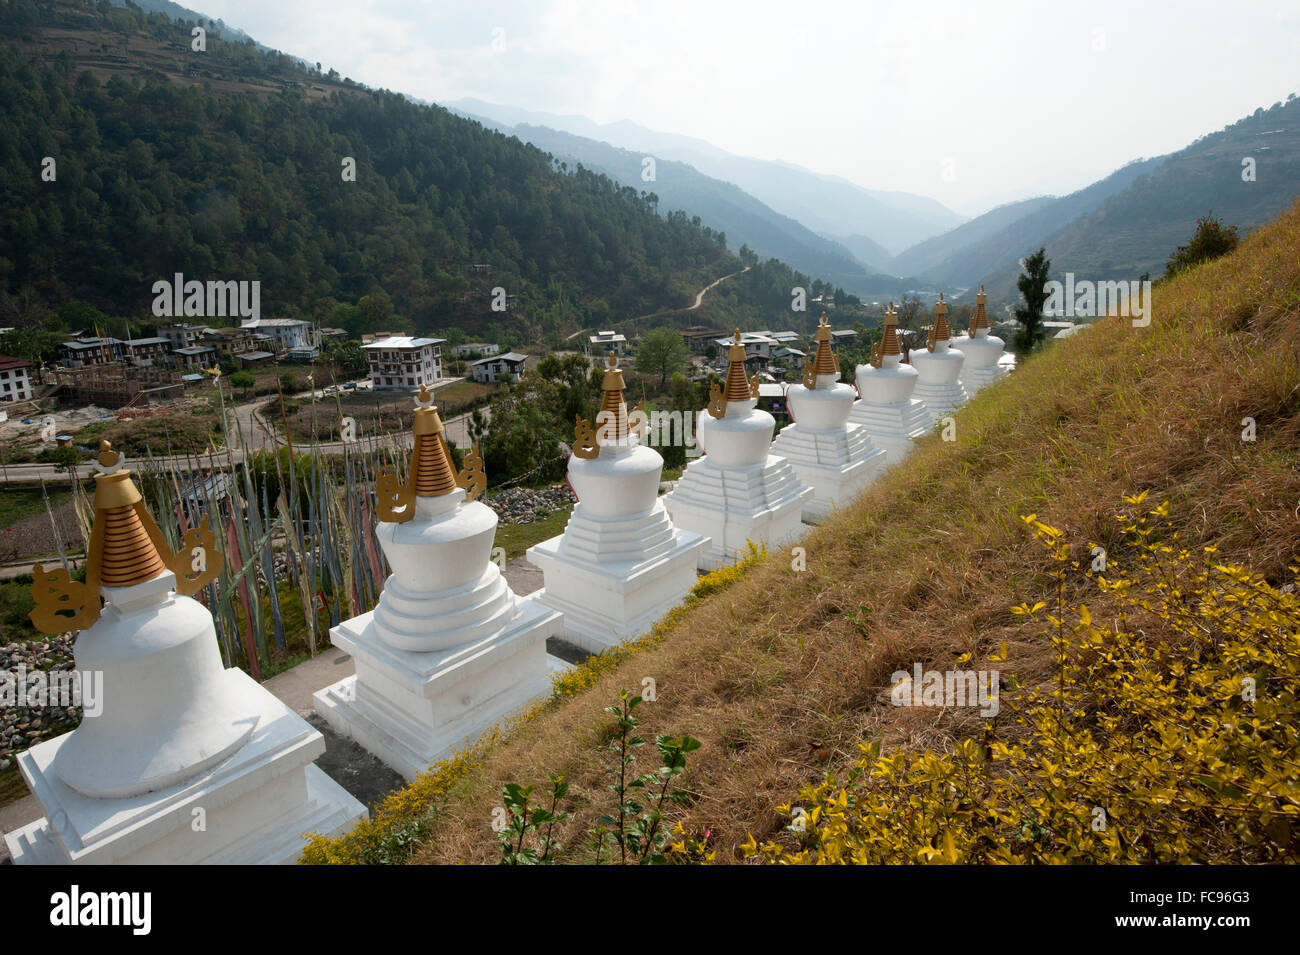 Rangée de chortens blancs à l'entrée de Rangjung monastère bouddhiste dans les belles collines au-dessus de l'Est du Bhoutan, Trashigang Banque D'Images